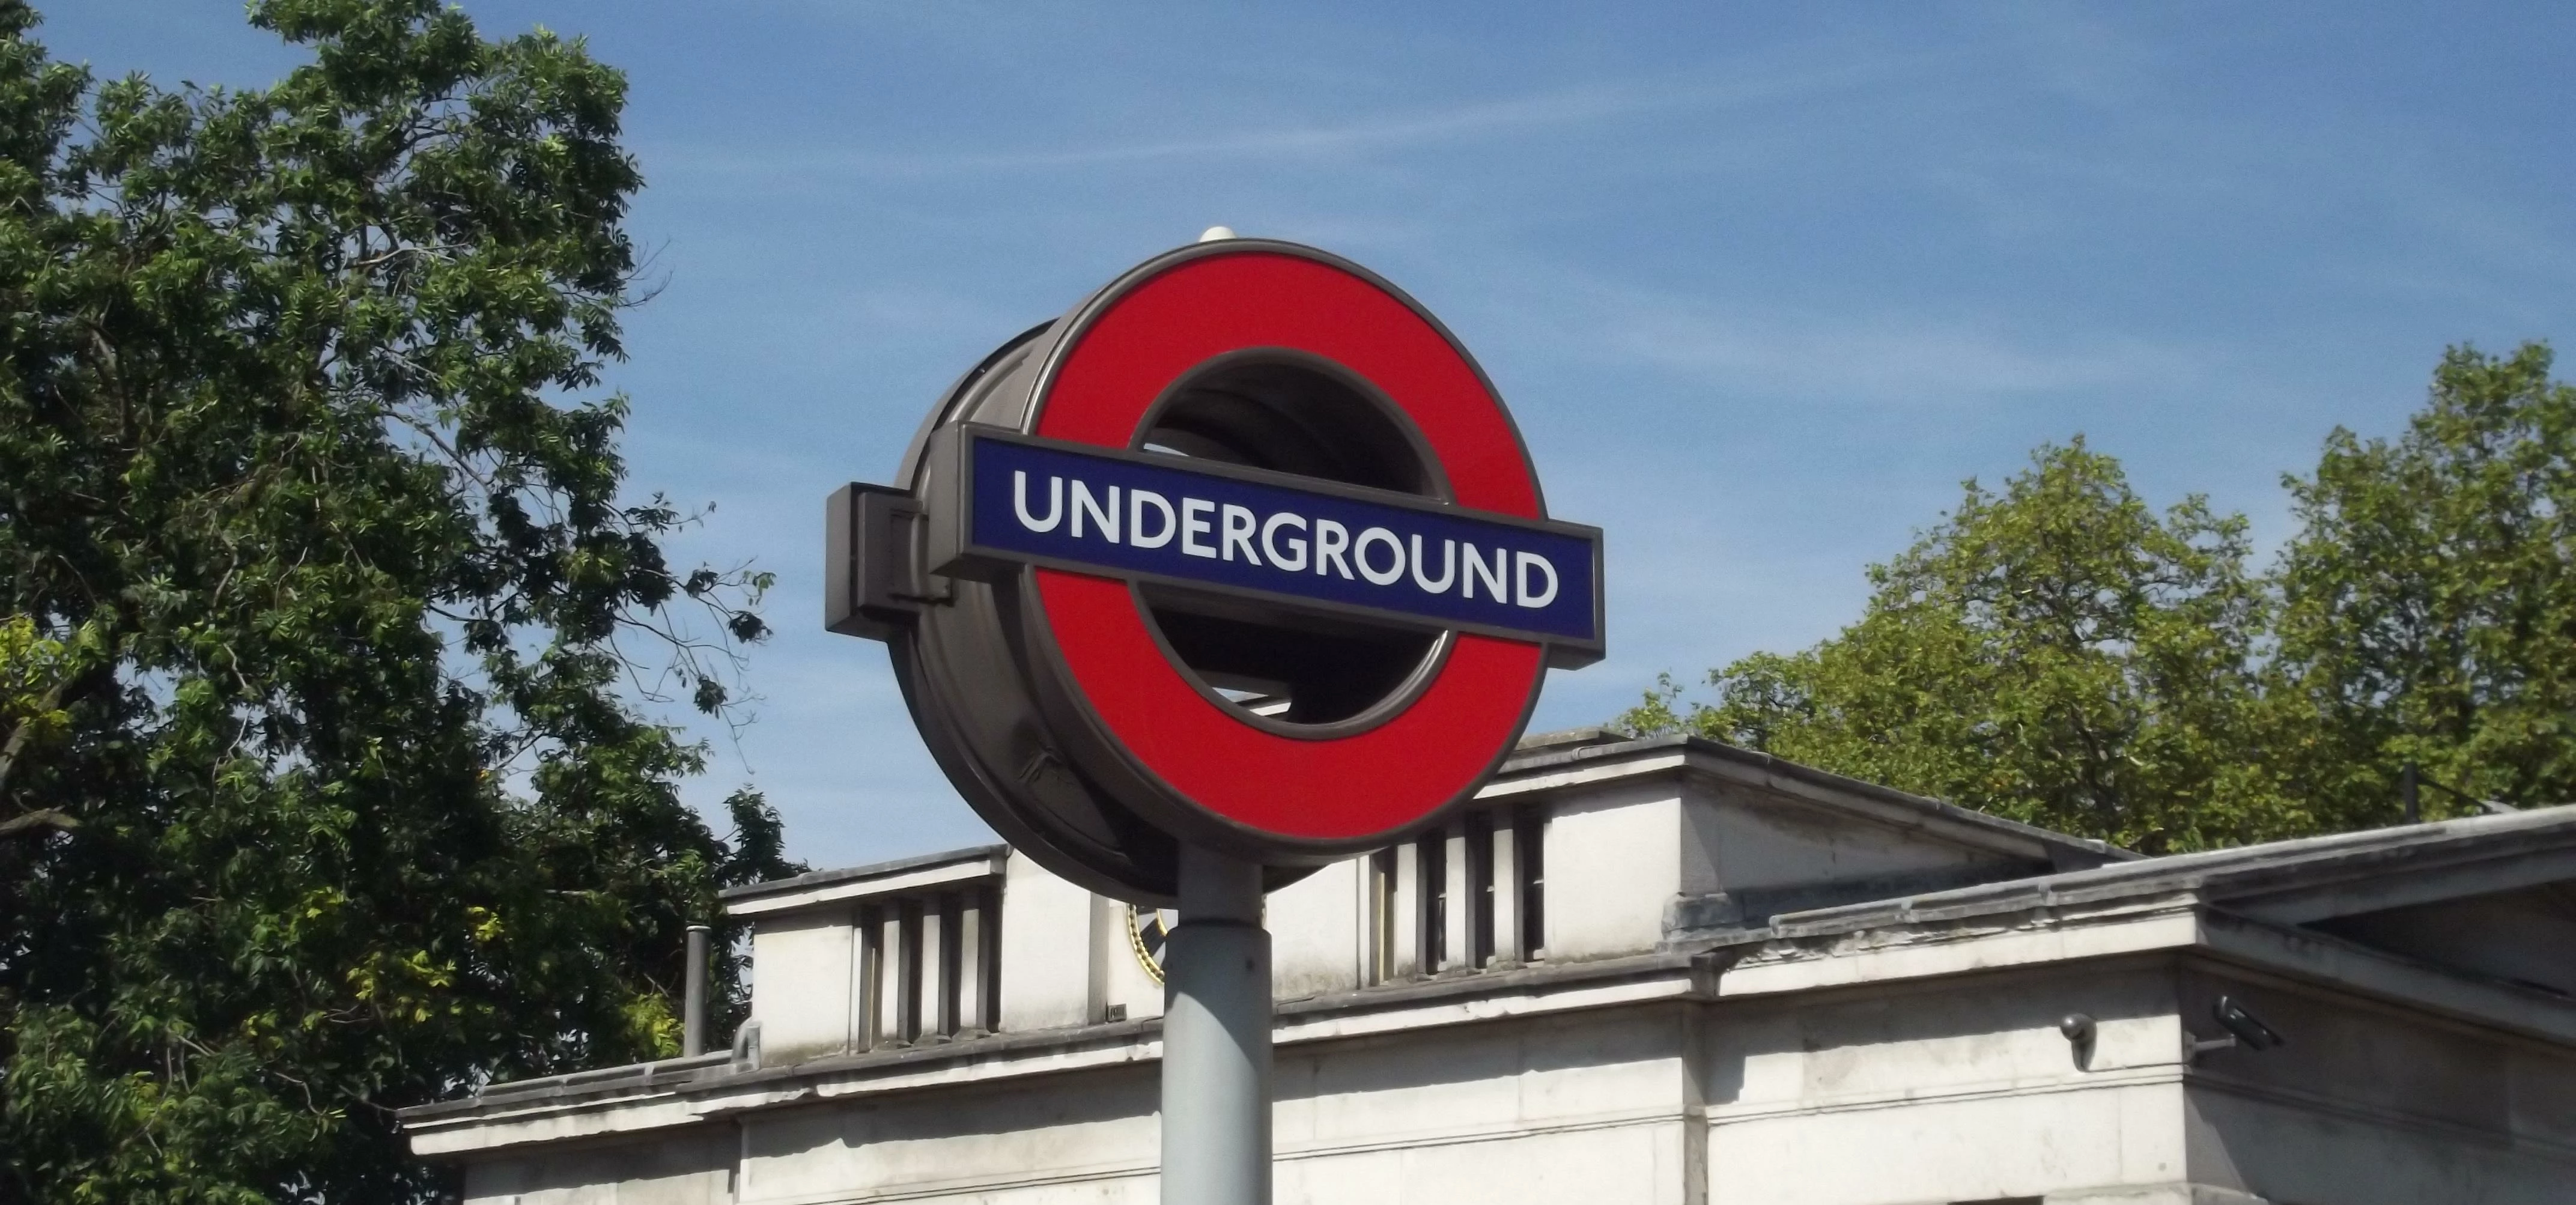 Hyde Park Corner Underground Station - sign